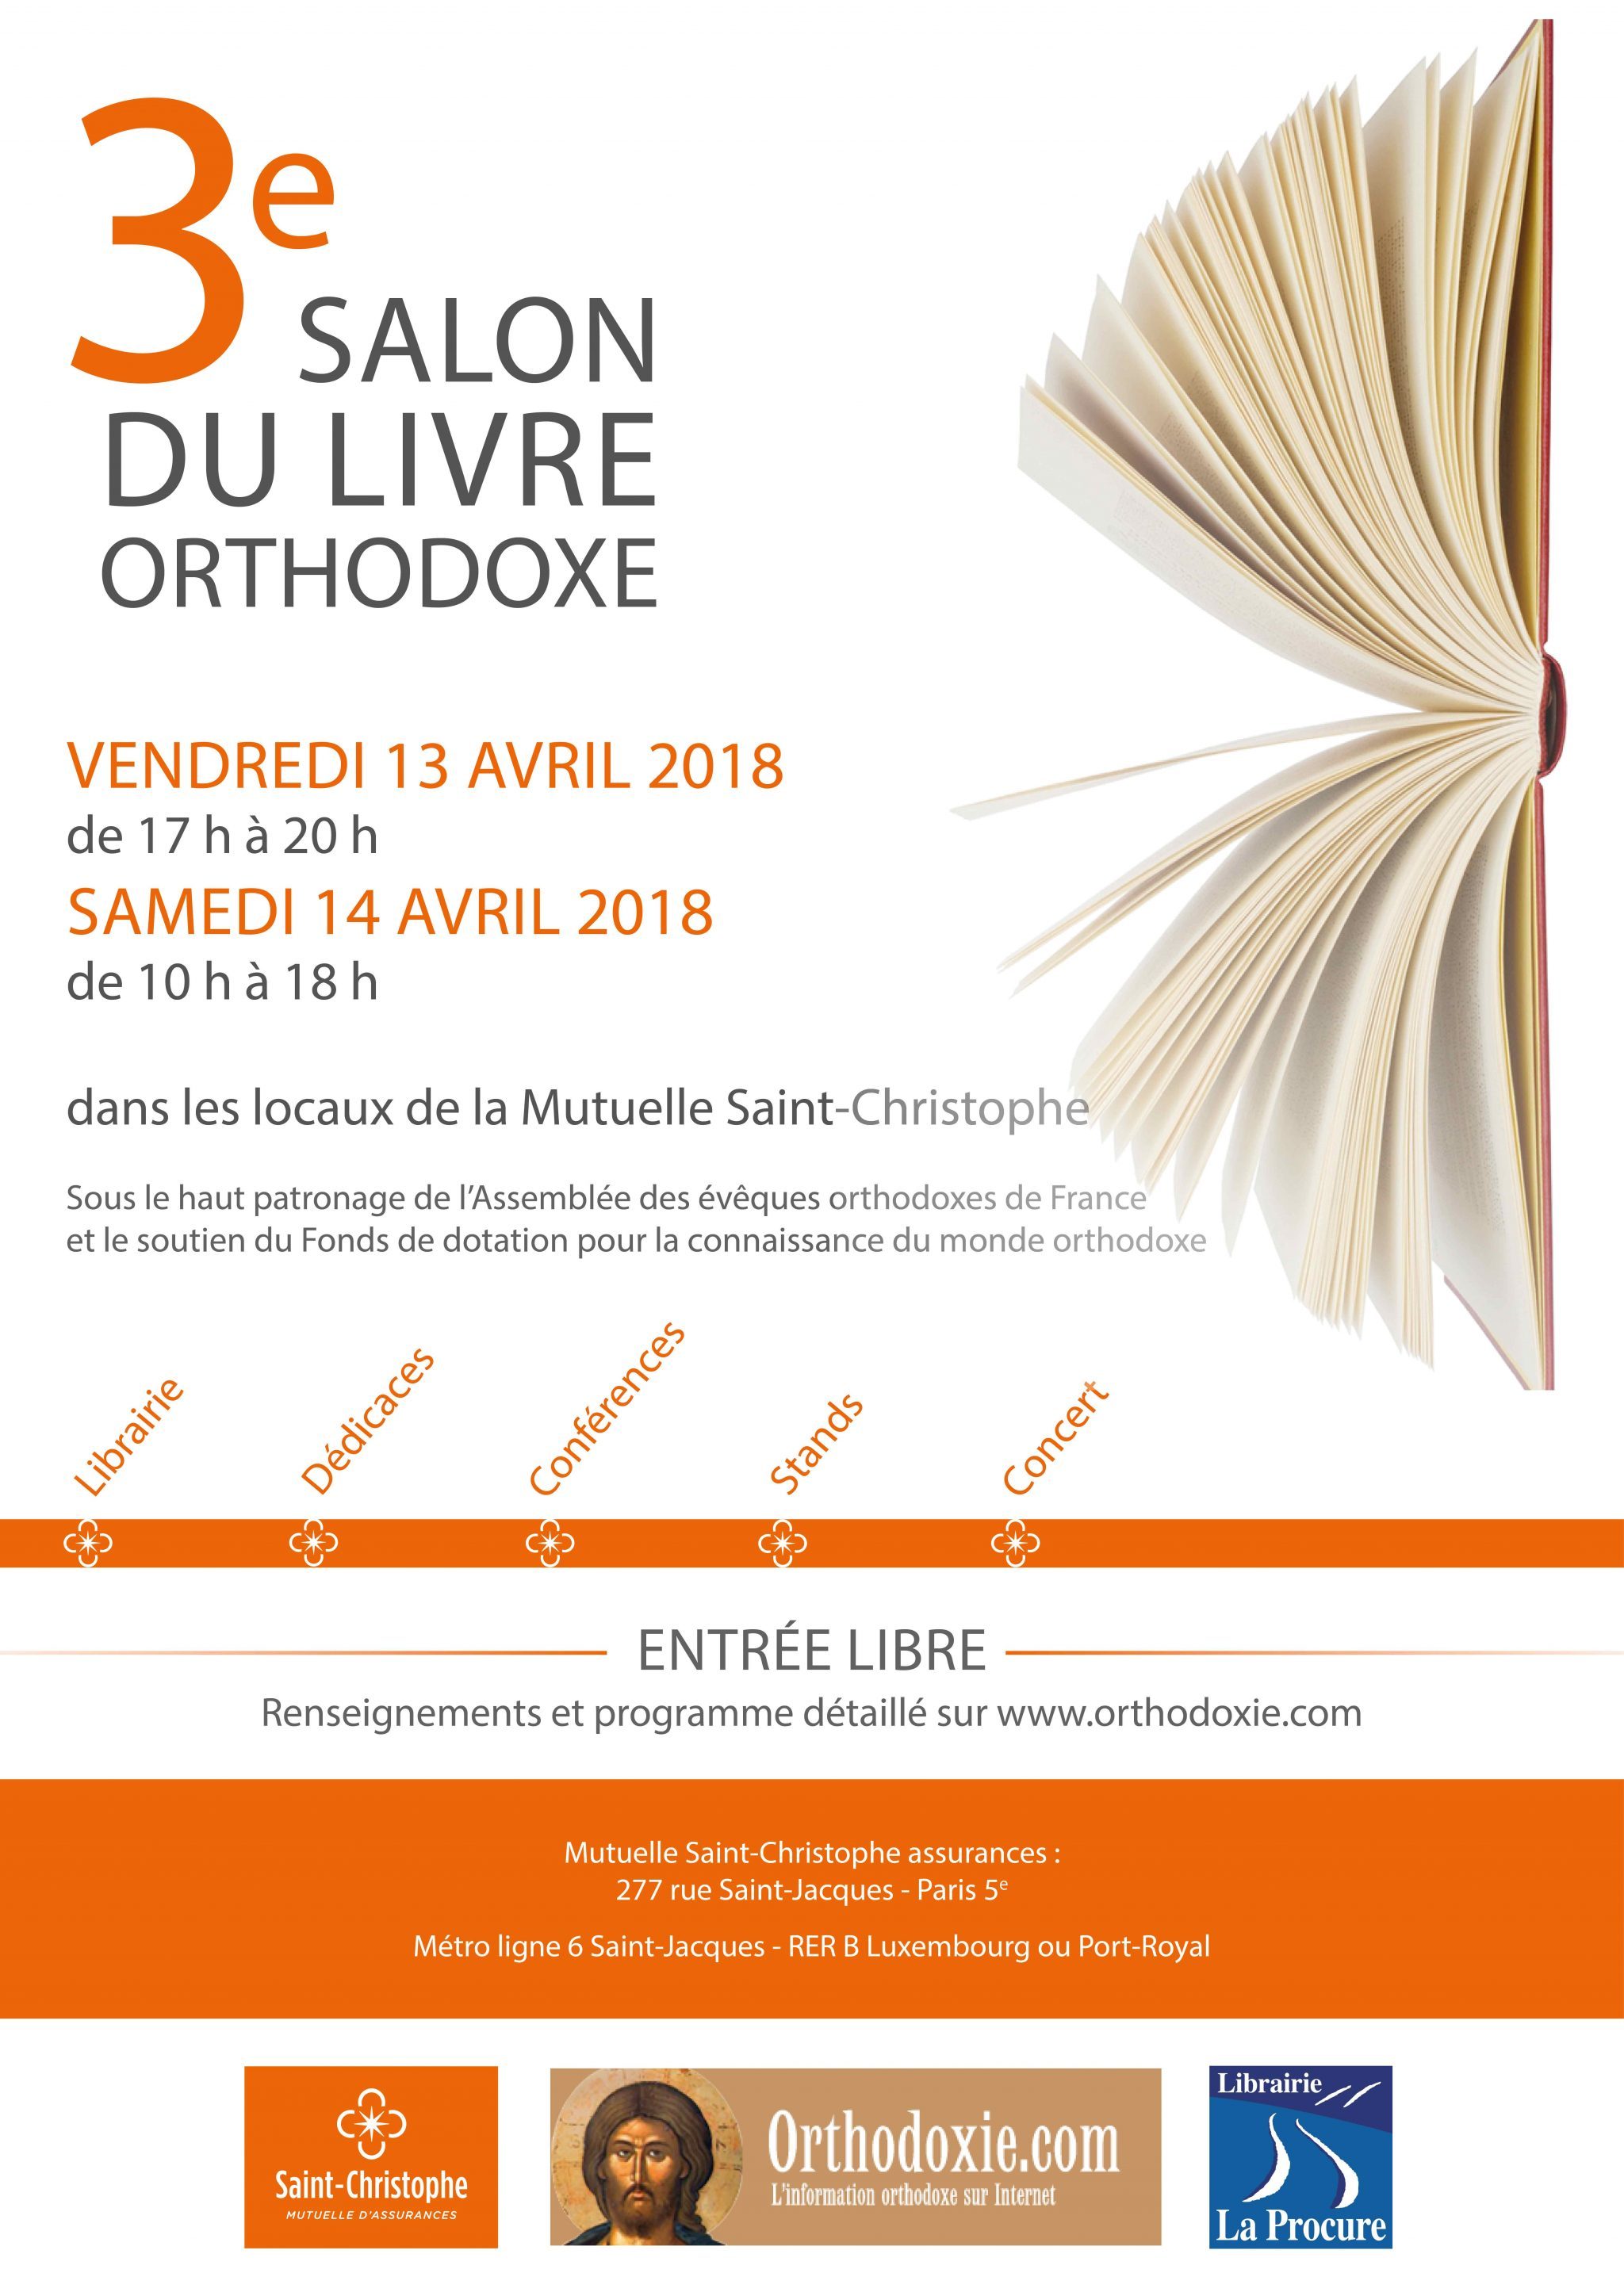 Le 3e Salon du livre orthodoxe : les 13 et 14 avril à Paris